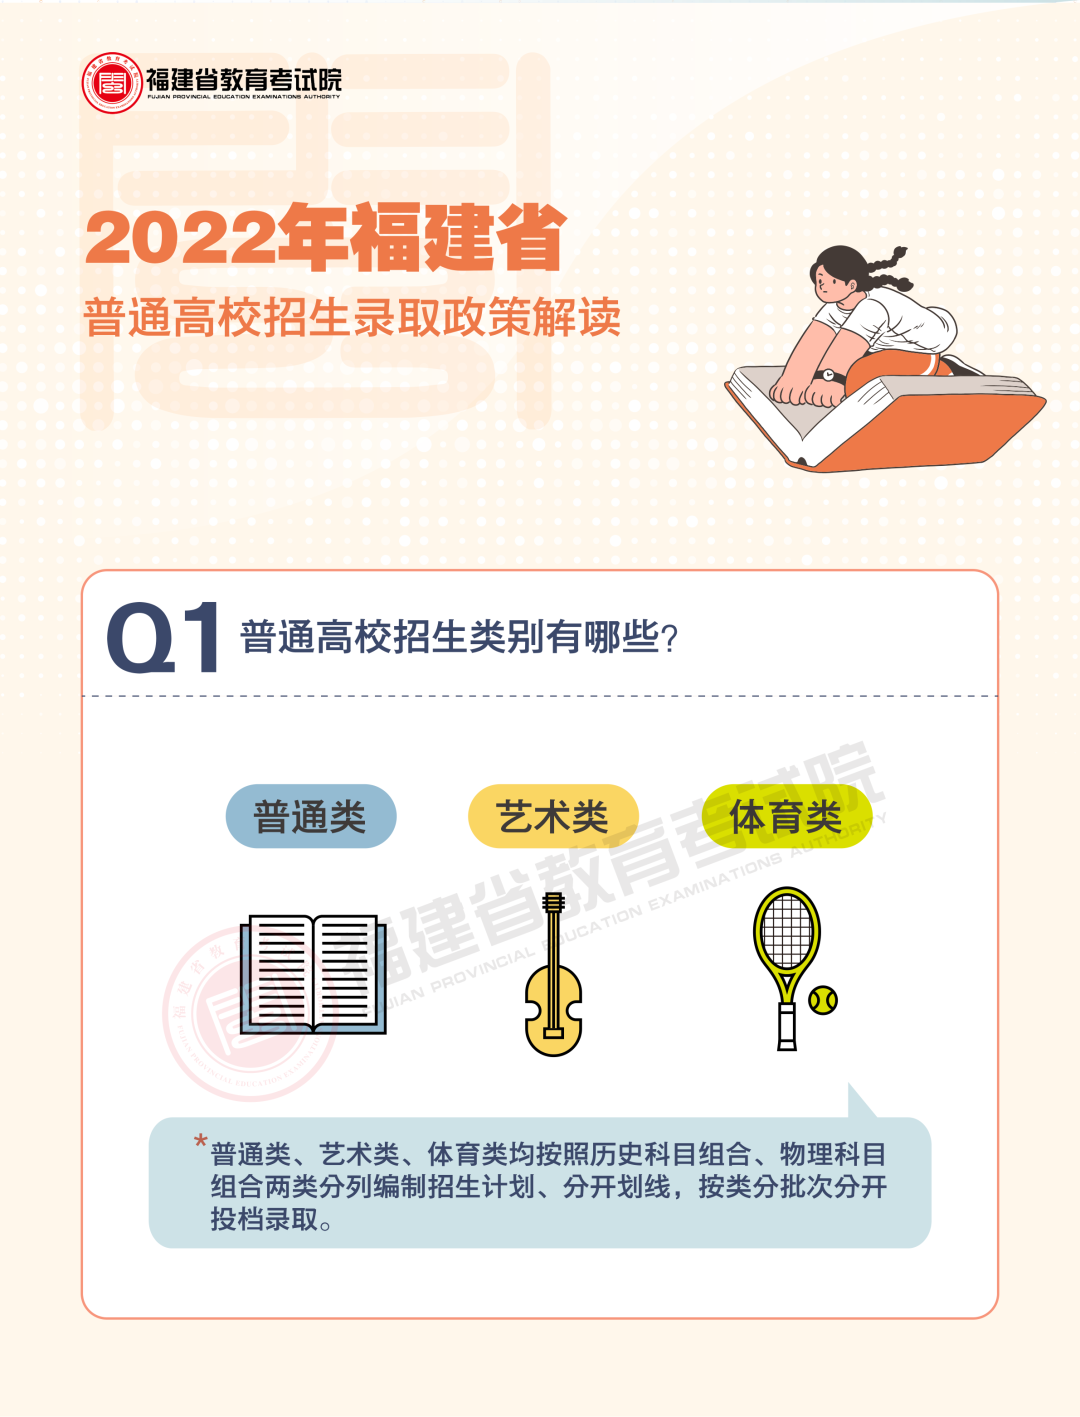 一图读懂 | 2022年福建省普通高校招生录取政策解读